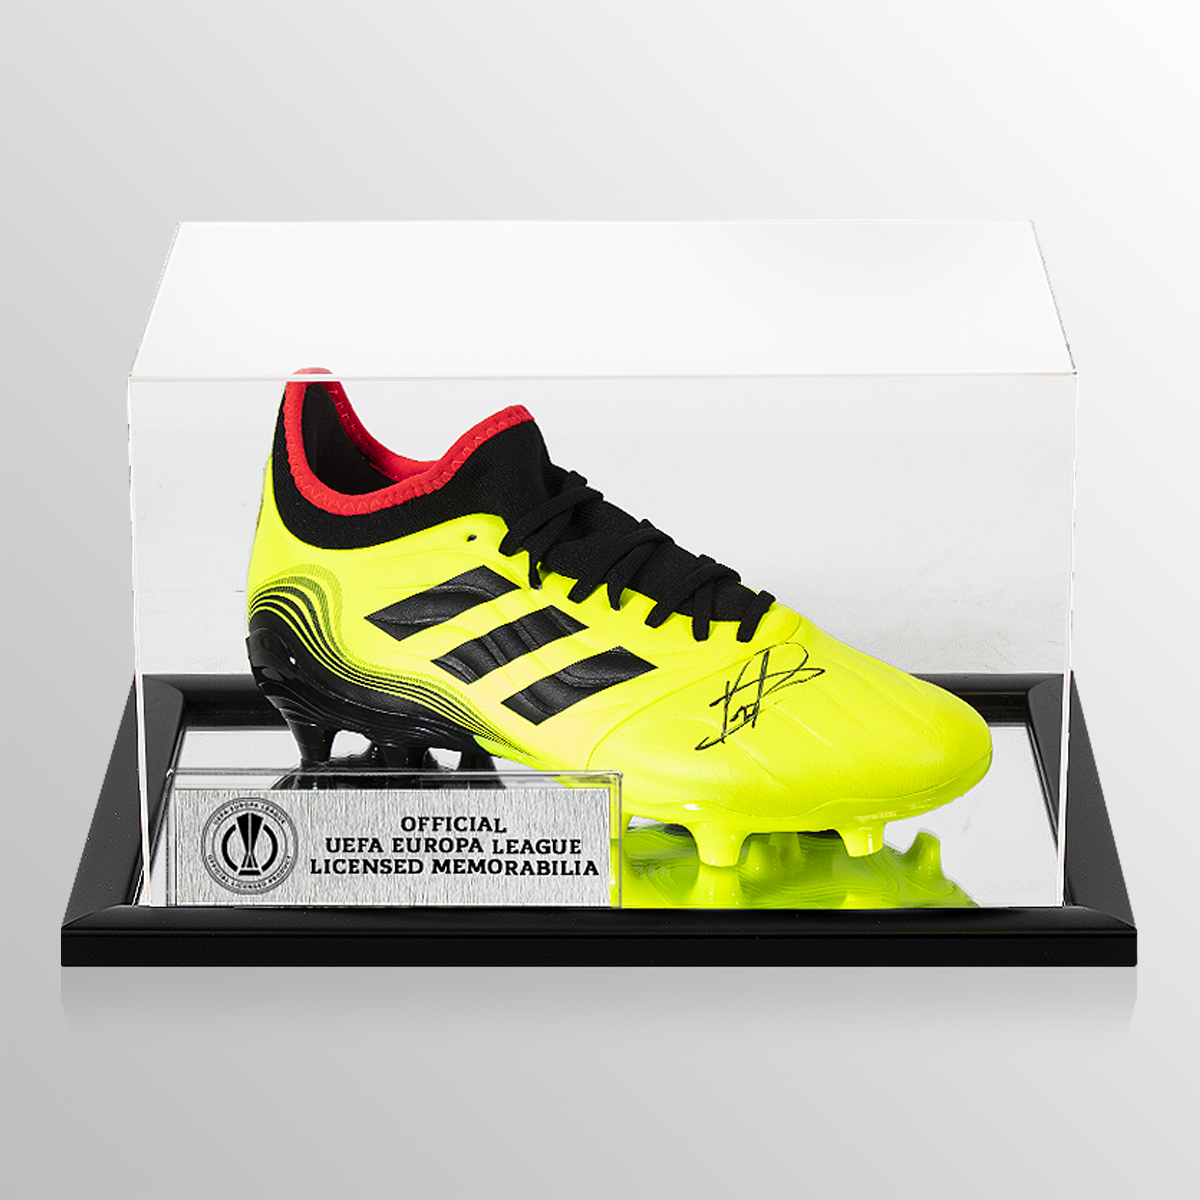 Pedri UEFA Europa League Firmado Amarillo Adidas Copa Sense .3 FG Boot en caso de acrílico